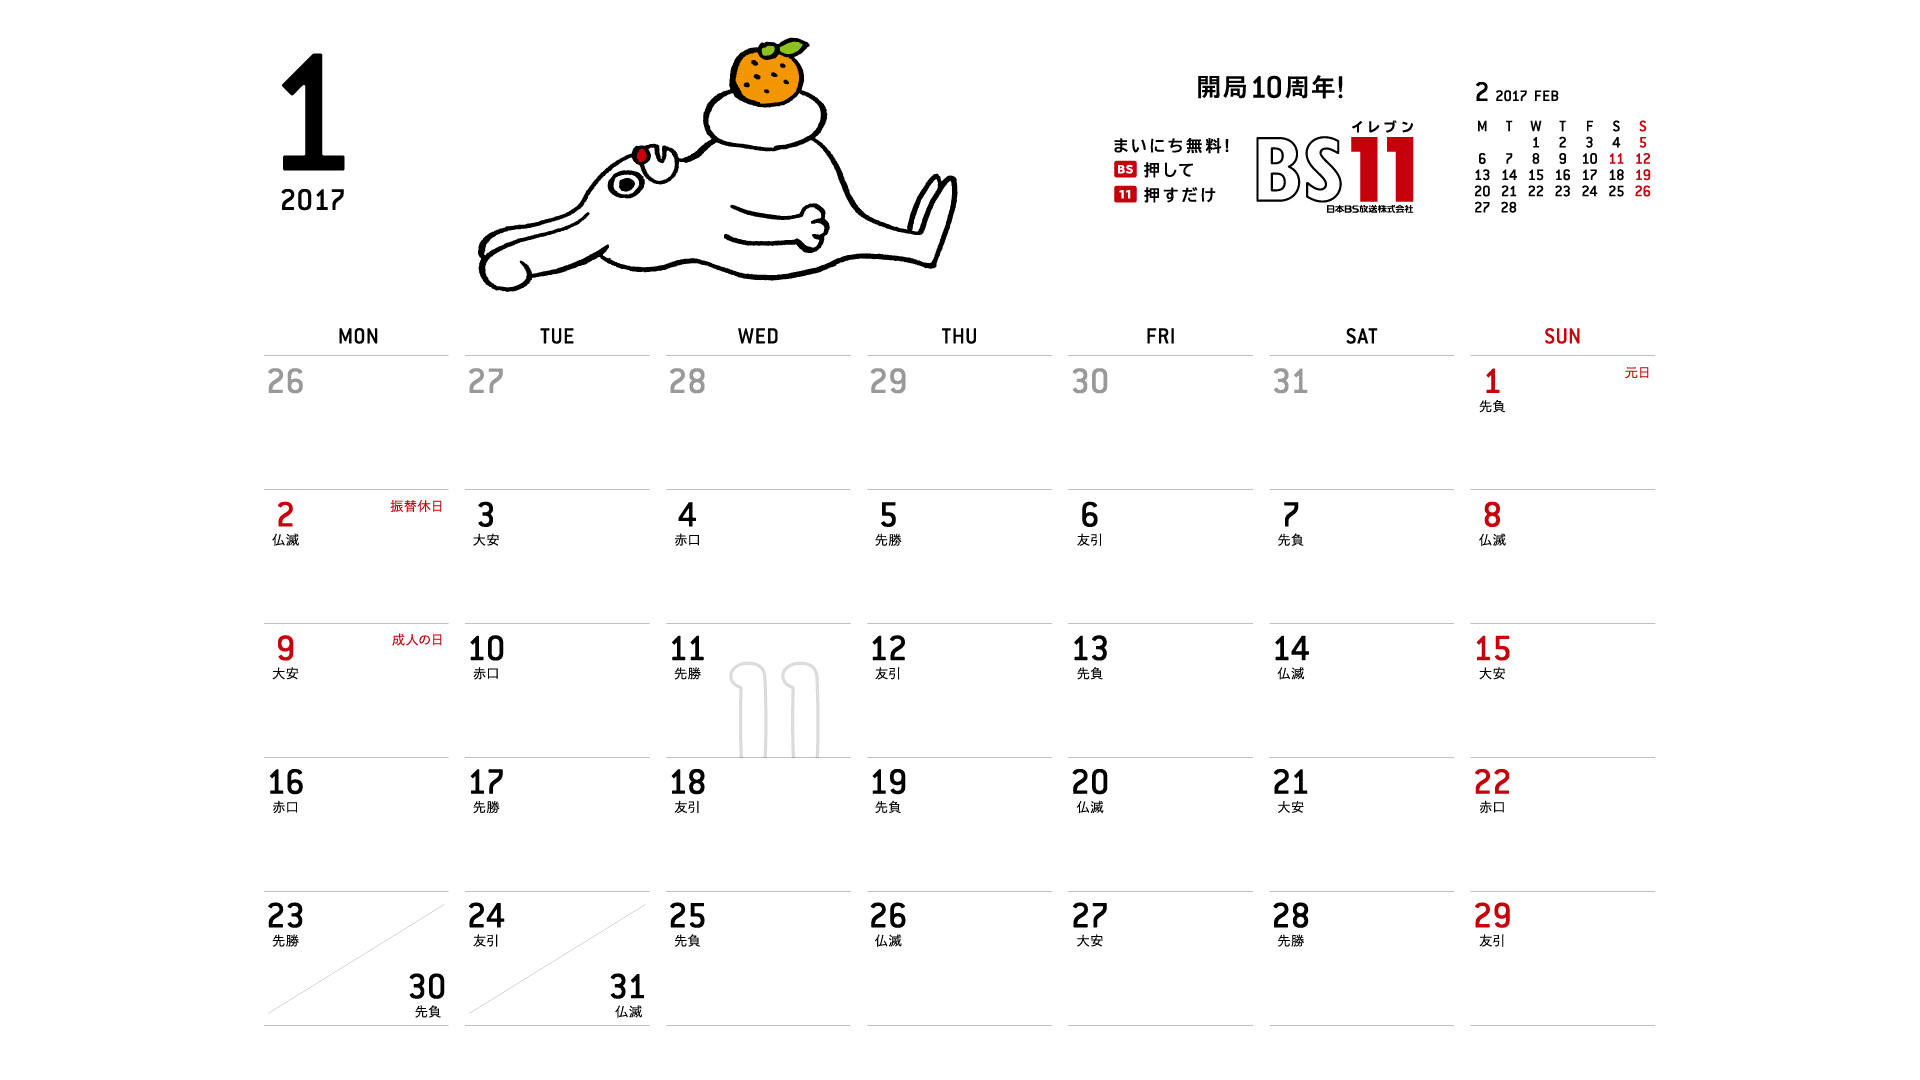 じゅういっちゃんのデジタルカレンダー17年01月 Bs11 イレブン いつでも無料放送